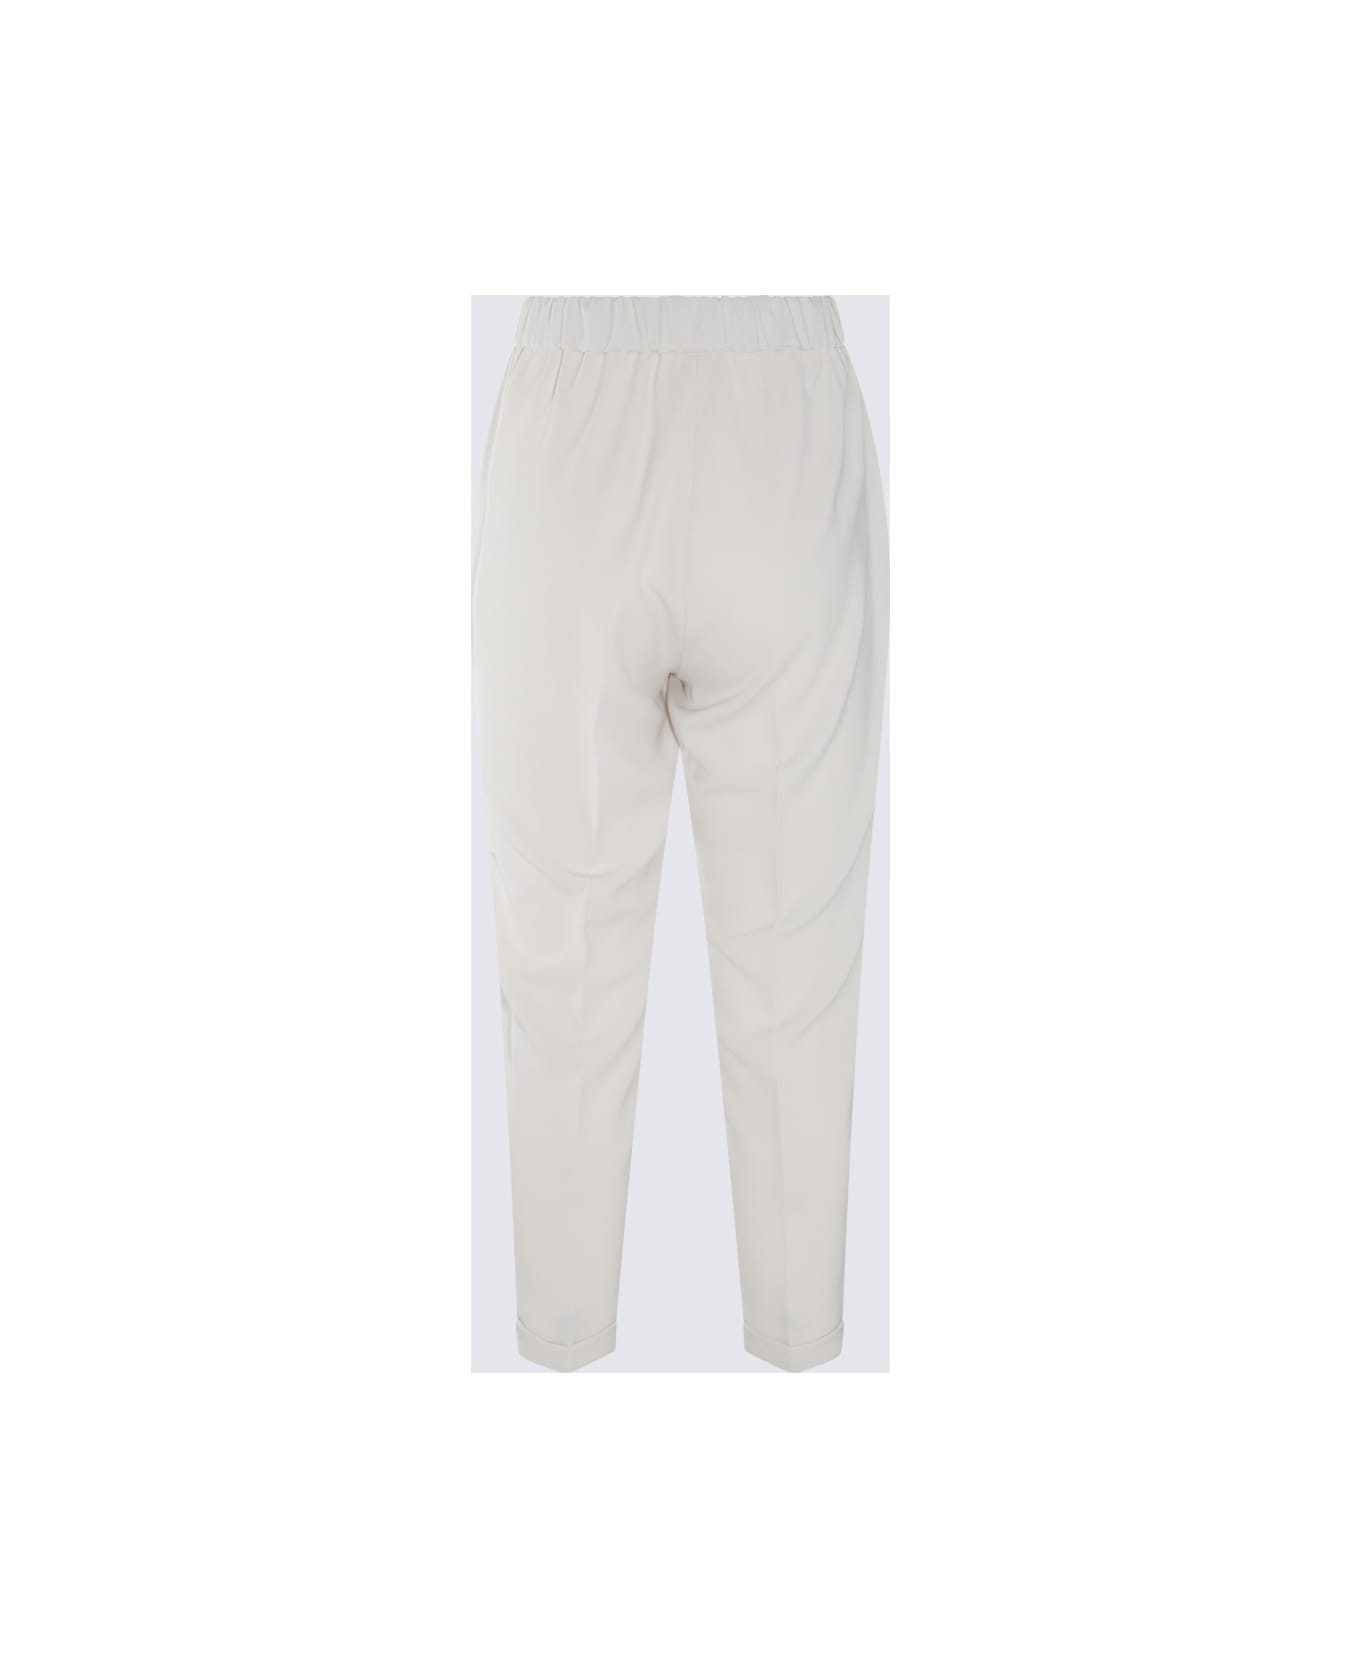 Antonelli White Cotton Pants - White ボトムス